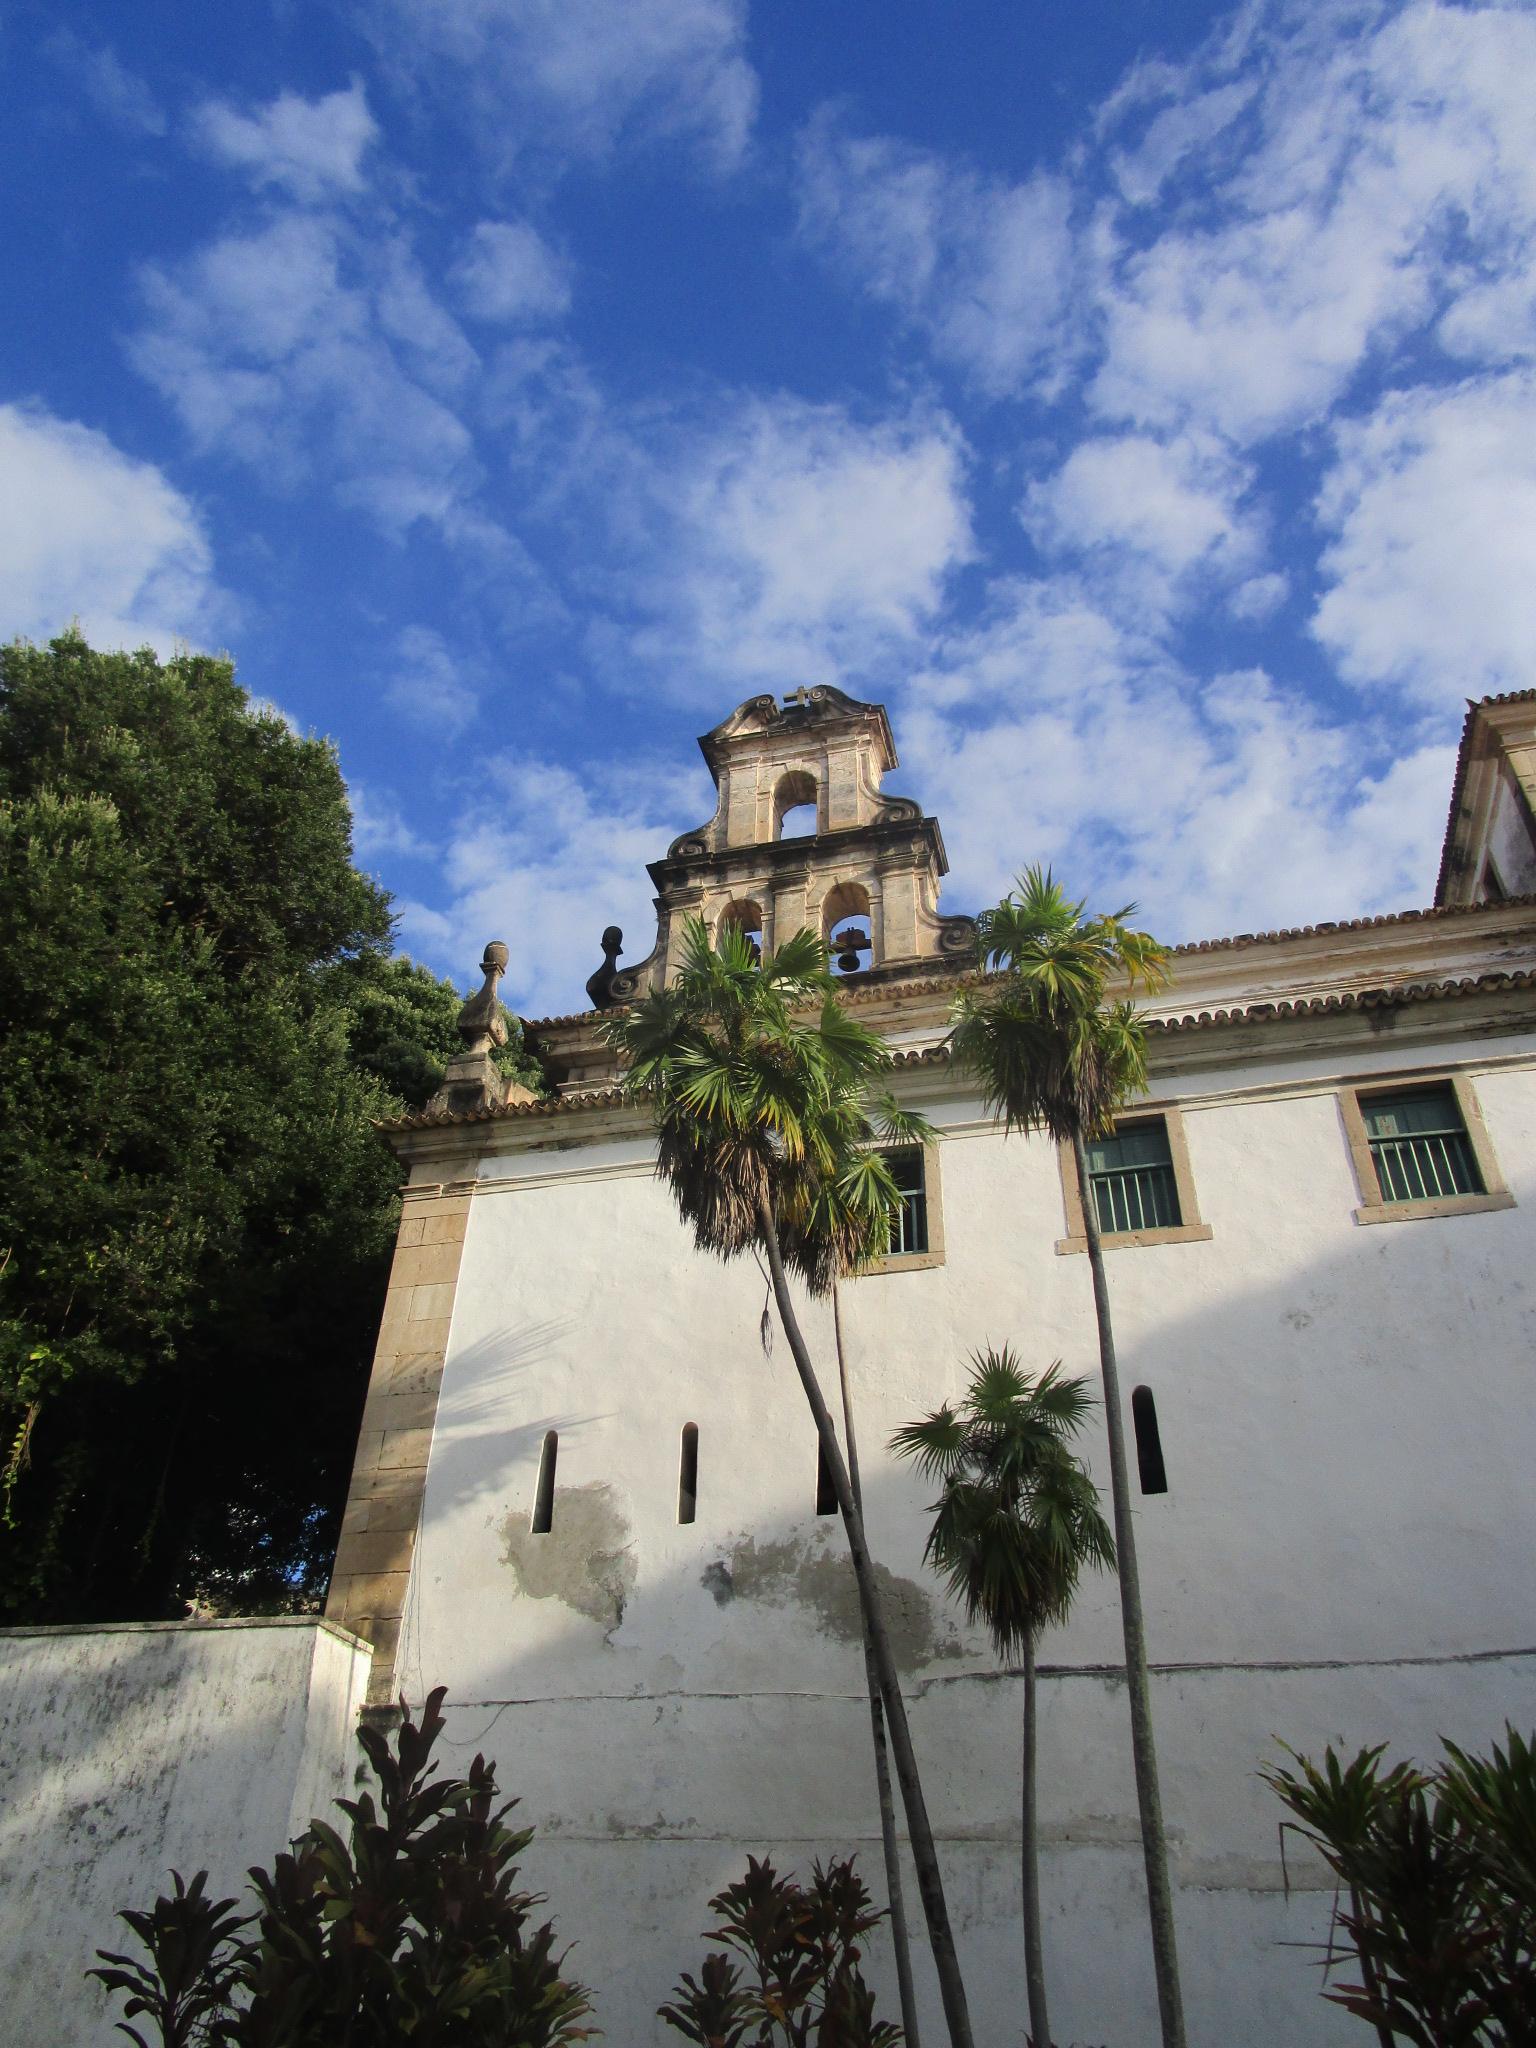 Cover image of this place Museu de Arte Sacra